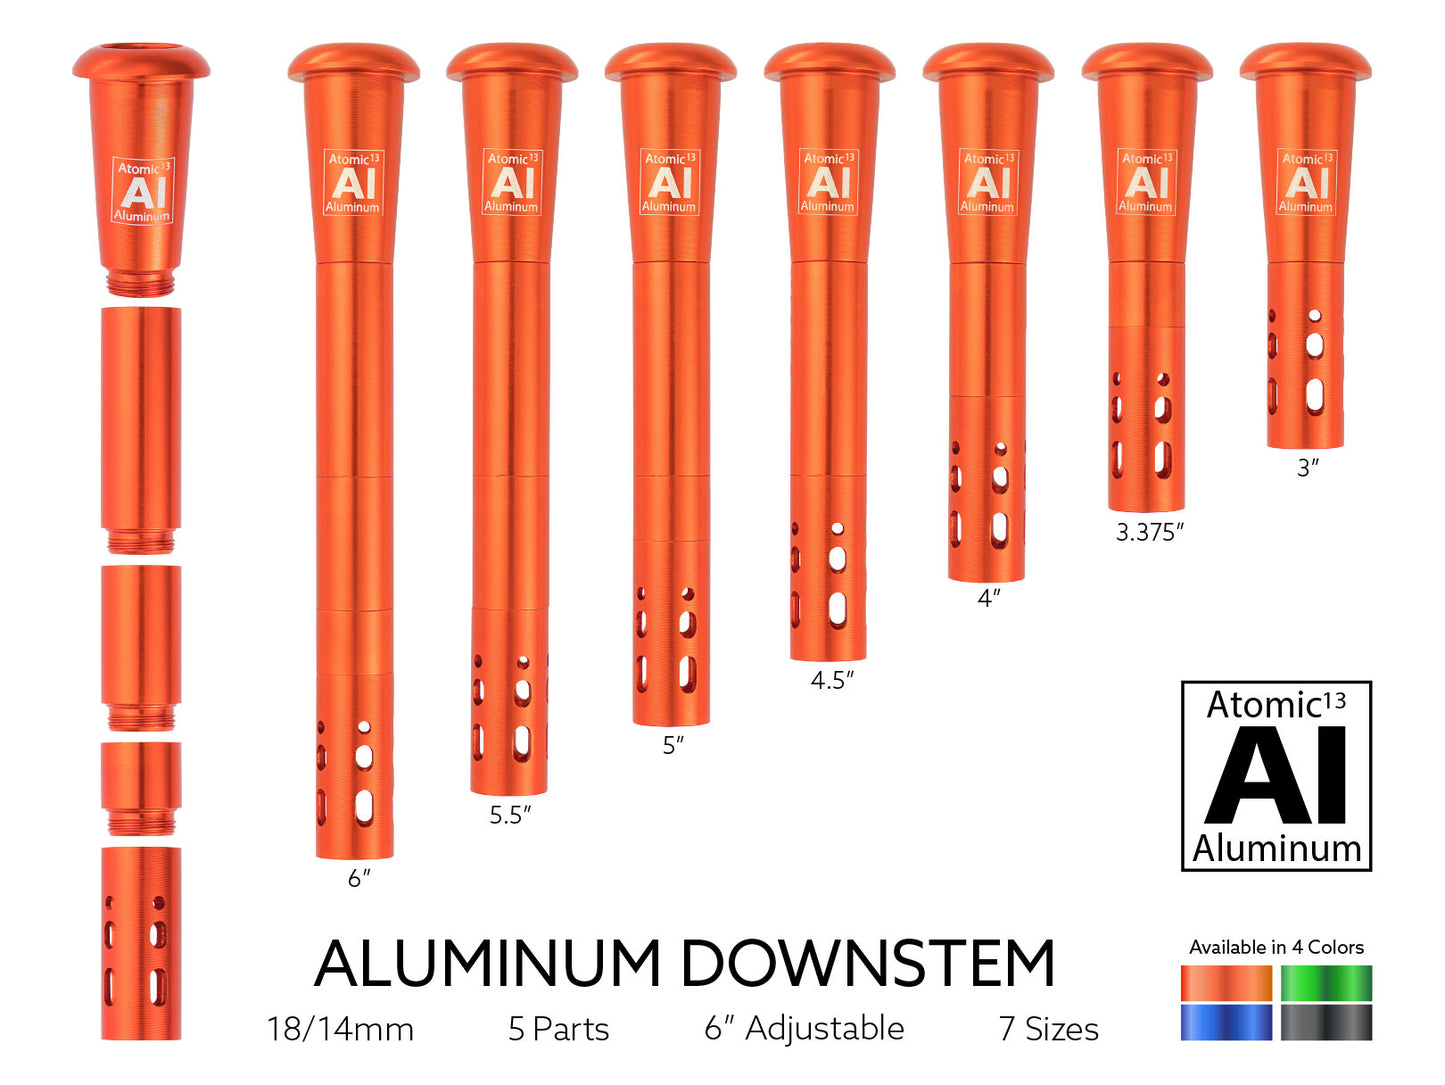 Atomic 13 Aluminum Downstem (4 Colors)